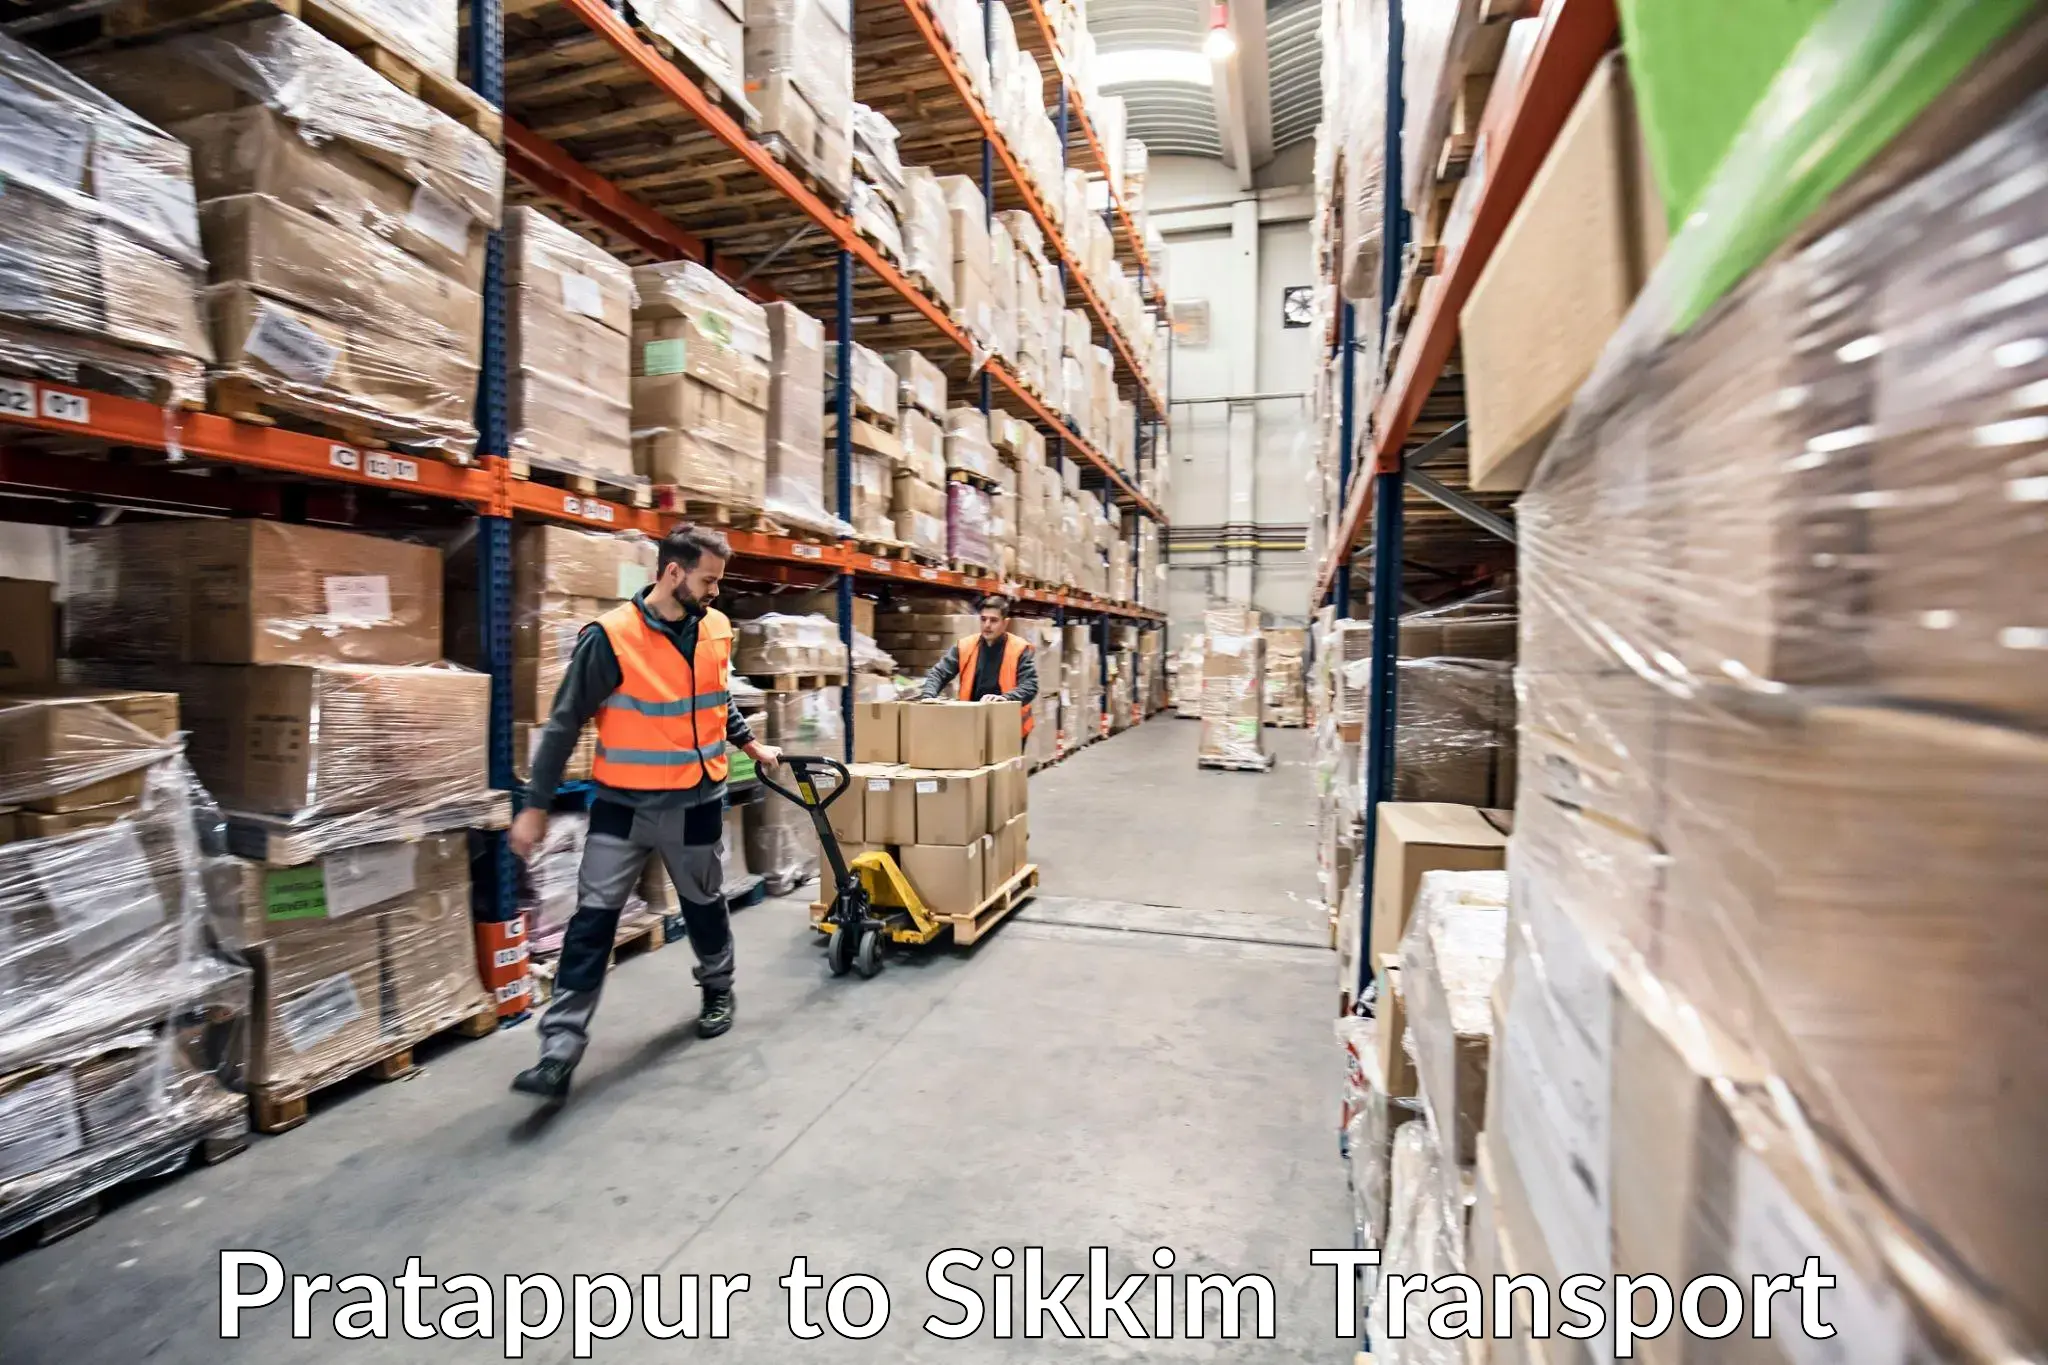 Shipping services Pratappur to Gangtok